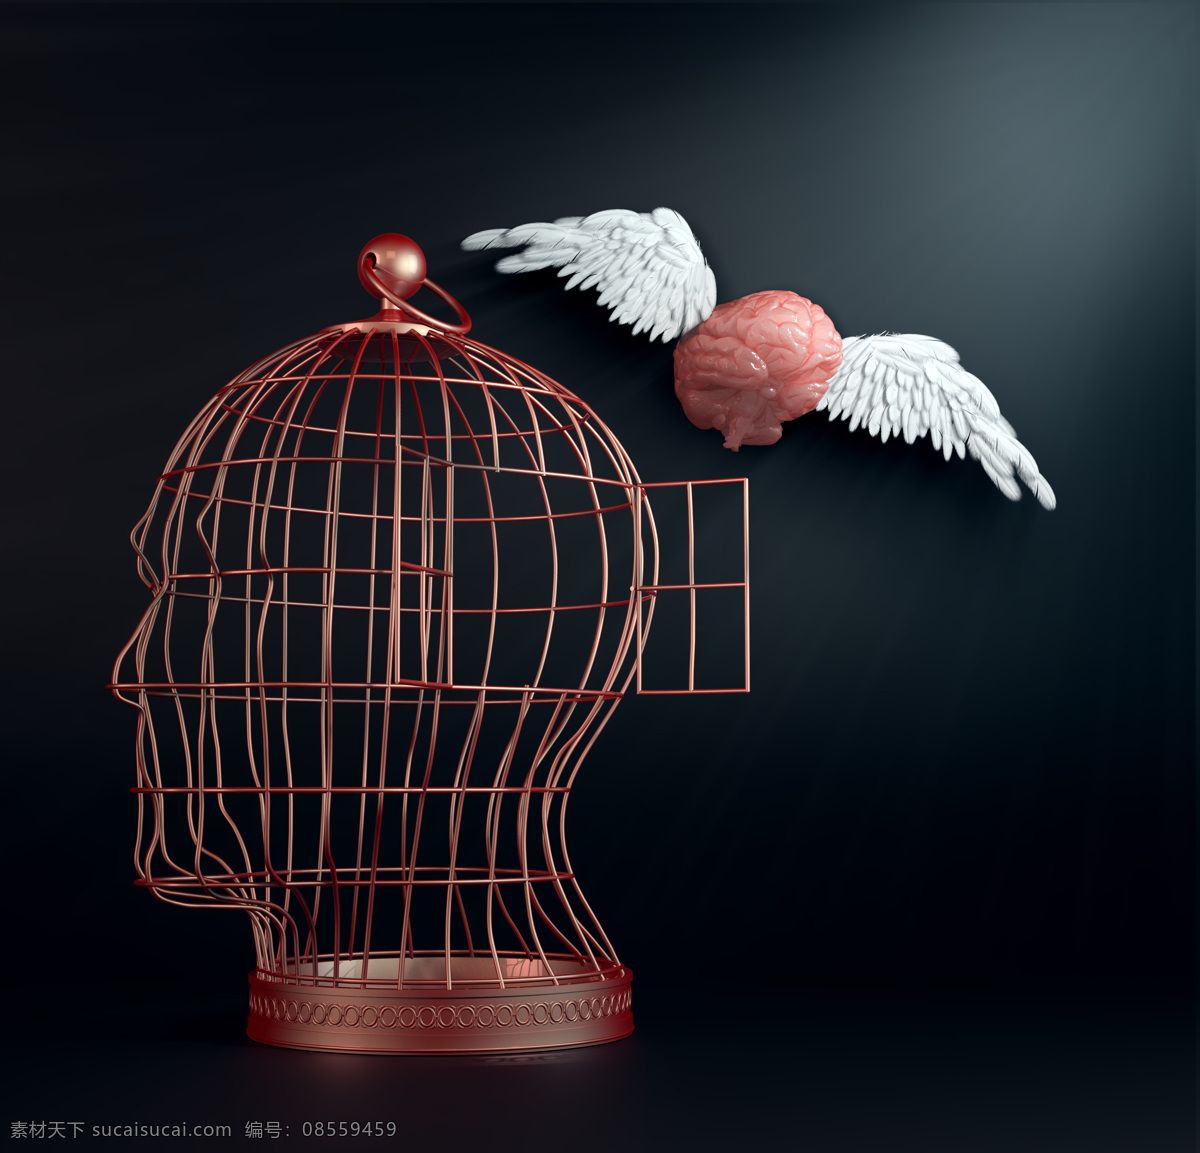 人脑 鸟笼 笼子 翅膀 大脑 创新 想像力 抽象 其他类别 现代科技